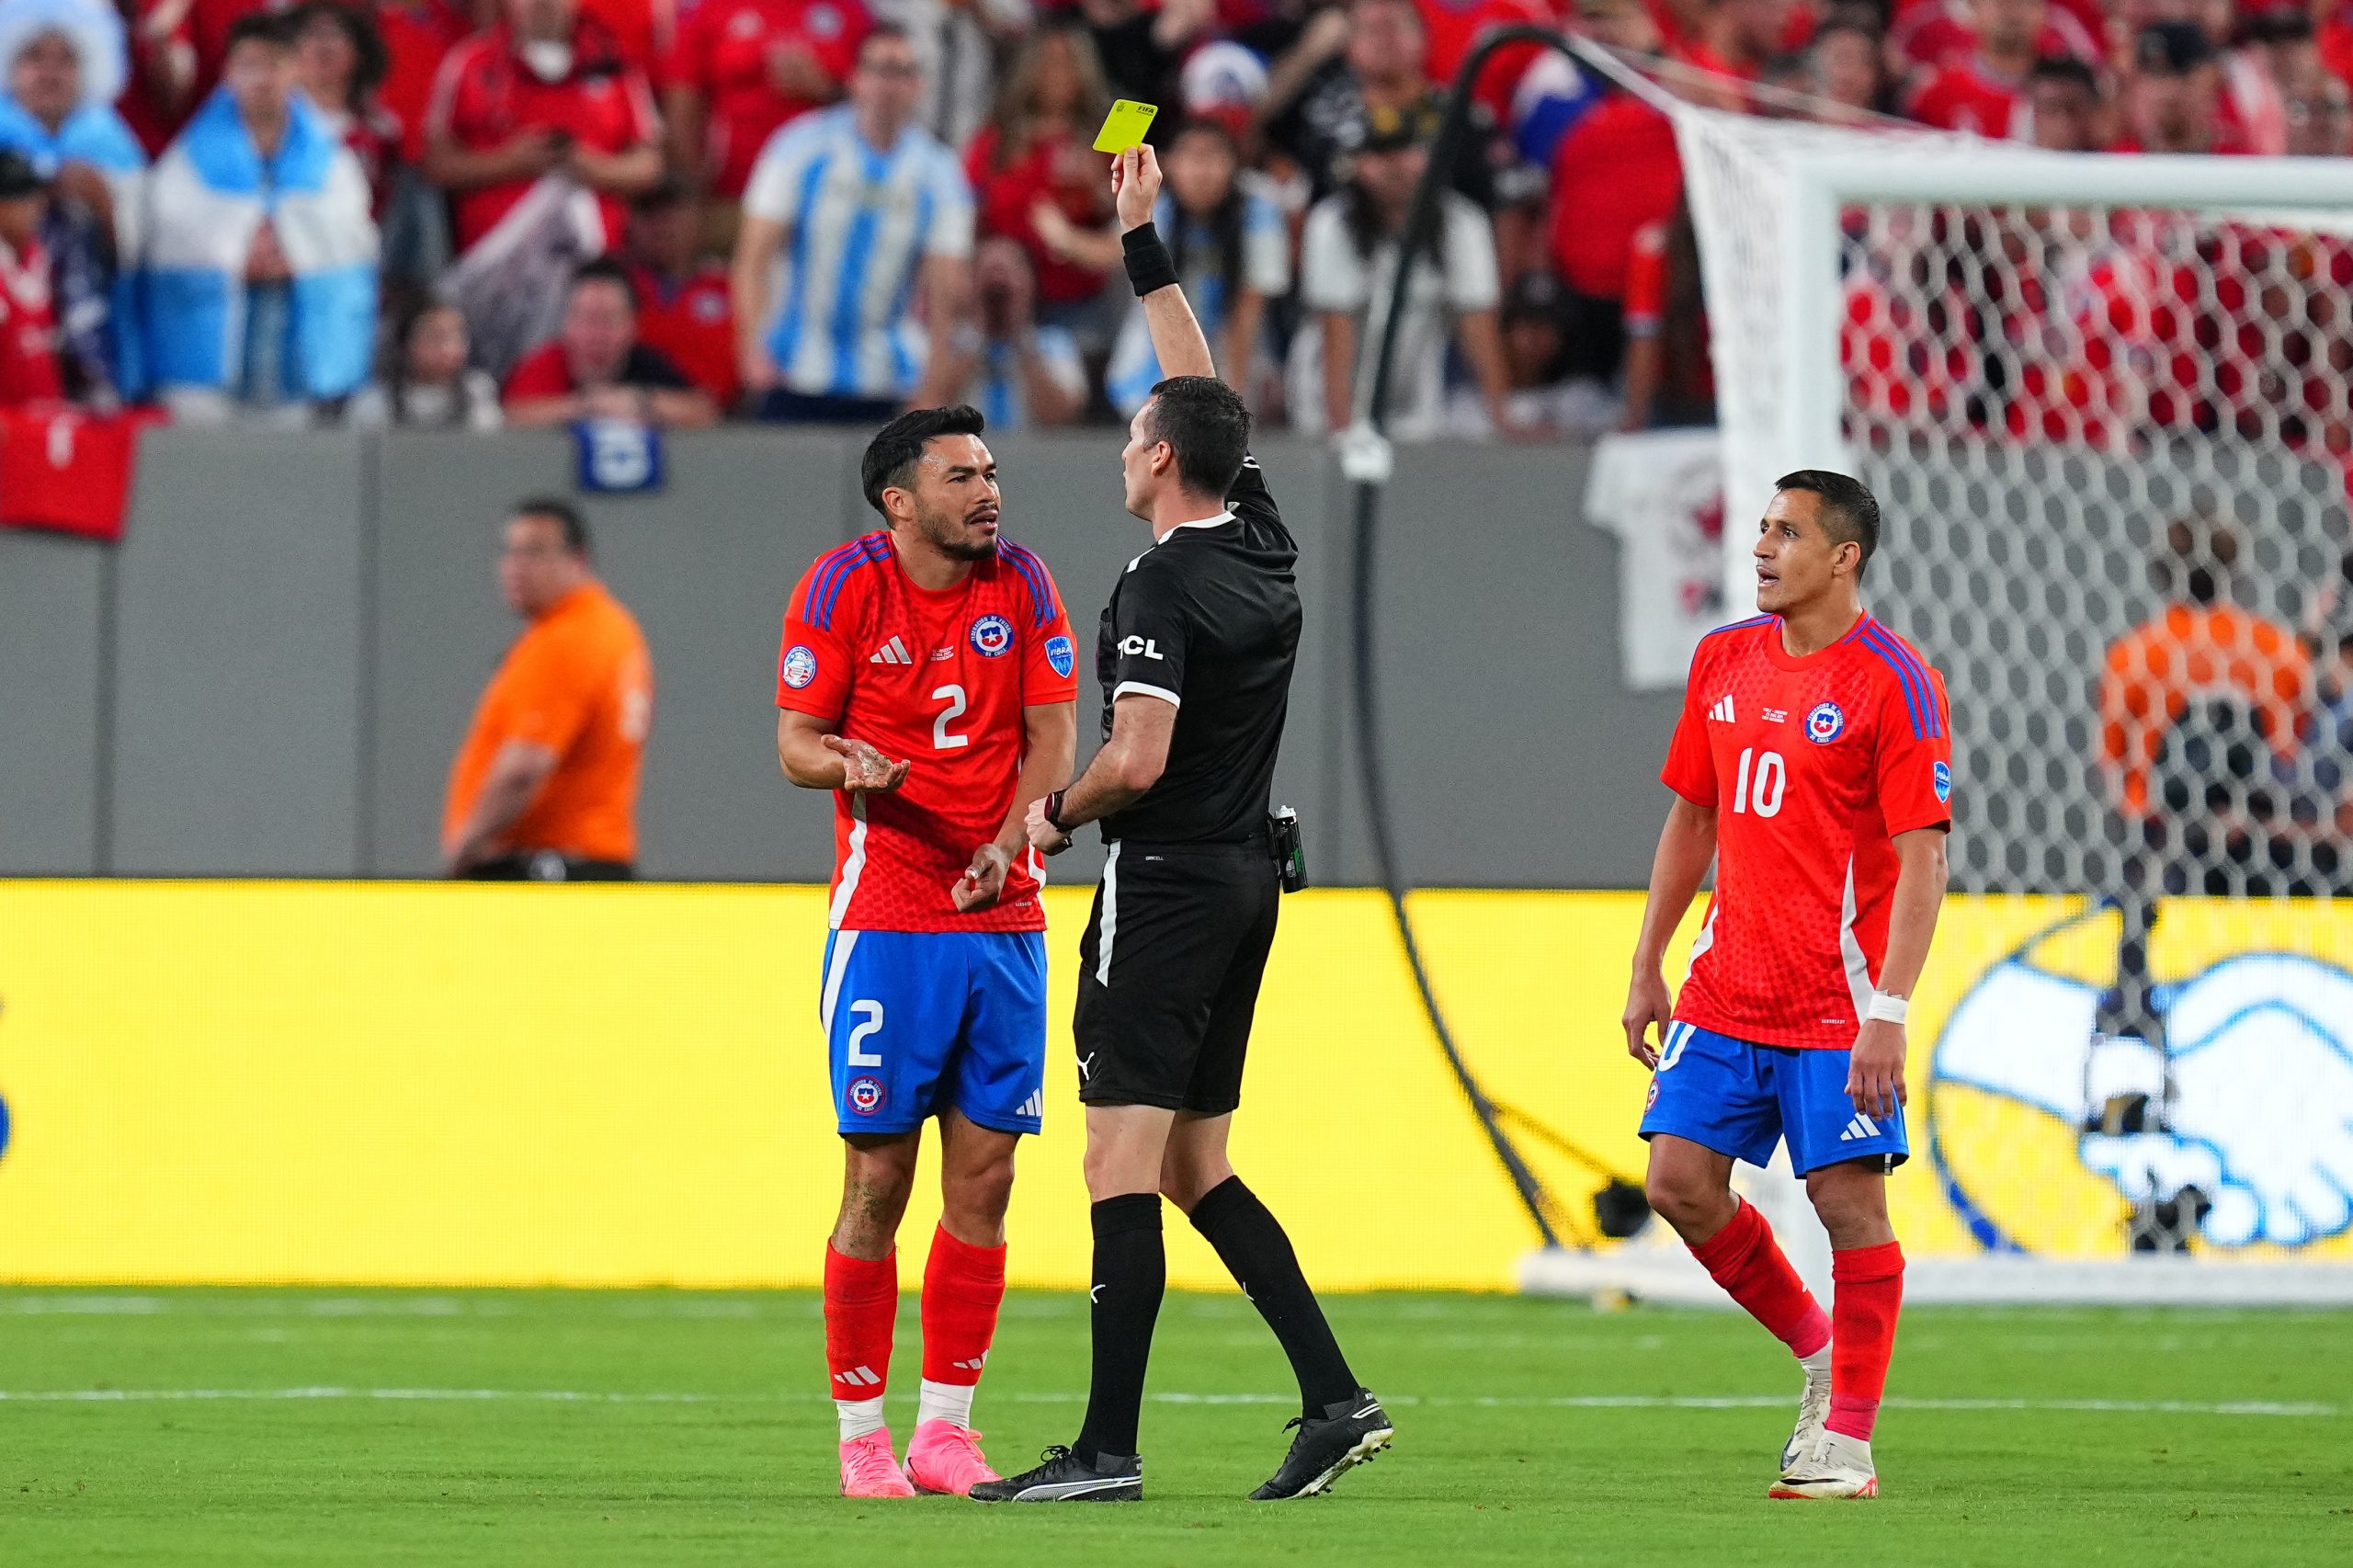 Chile obligado a ganar frente a Canadá, el partido corre riesgo de jugarse